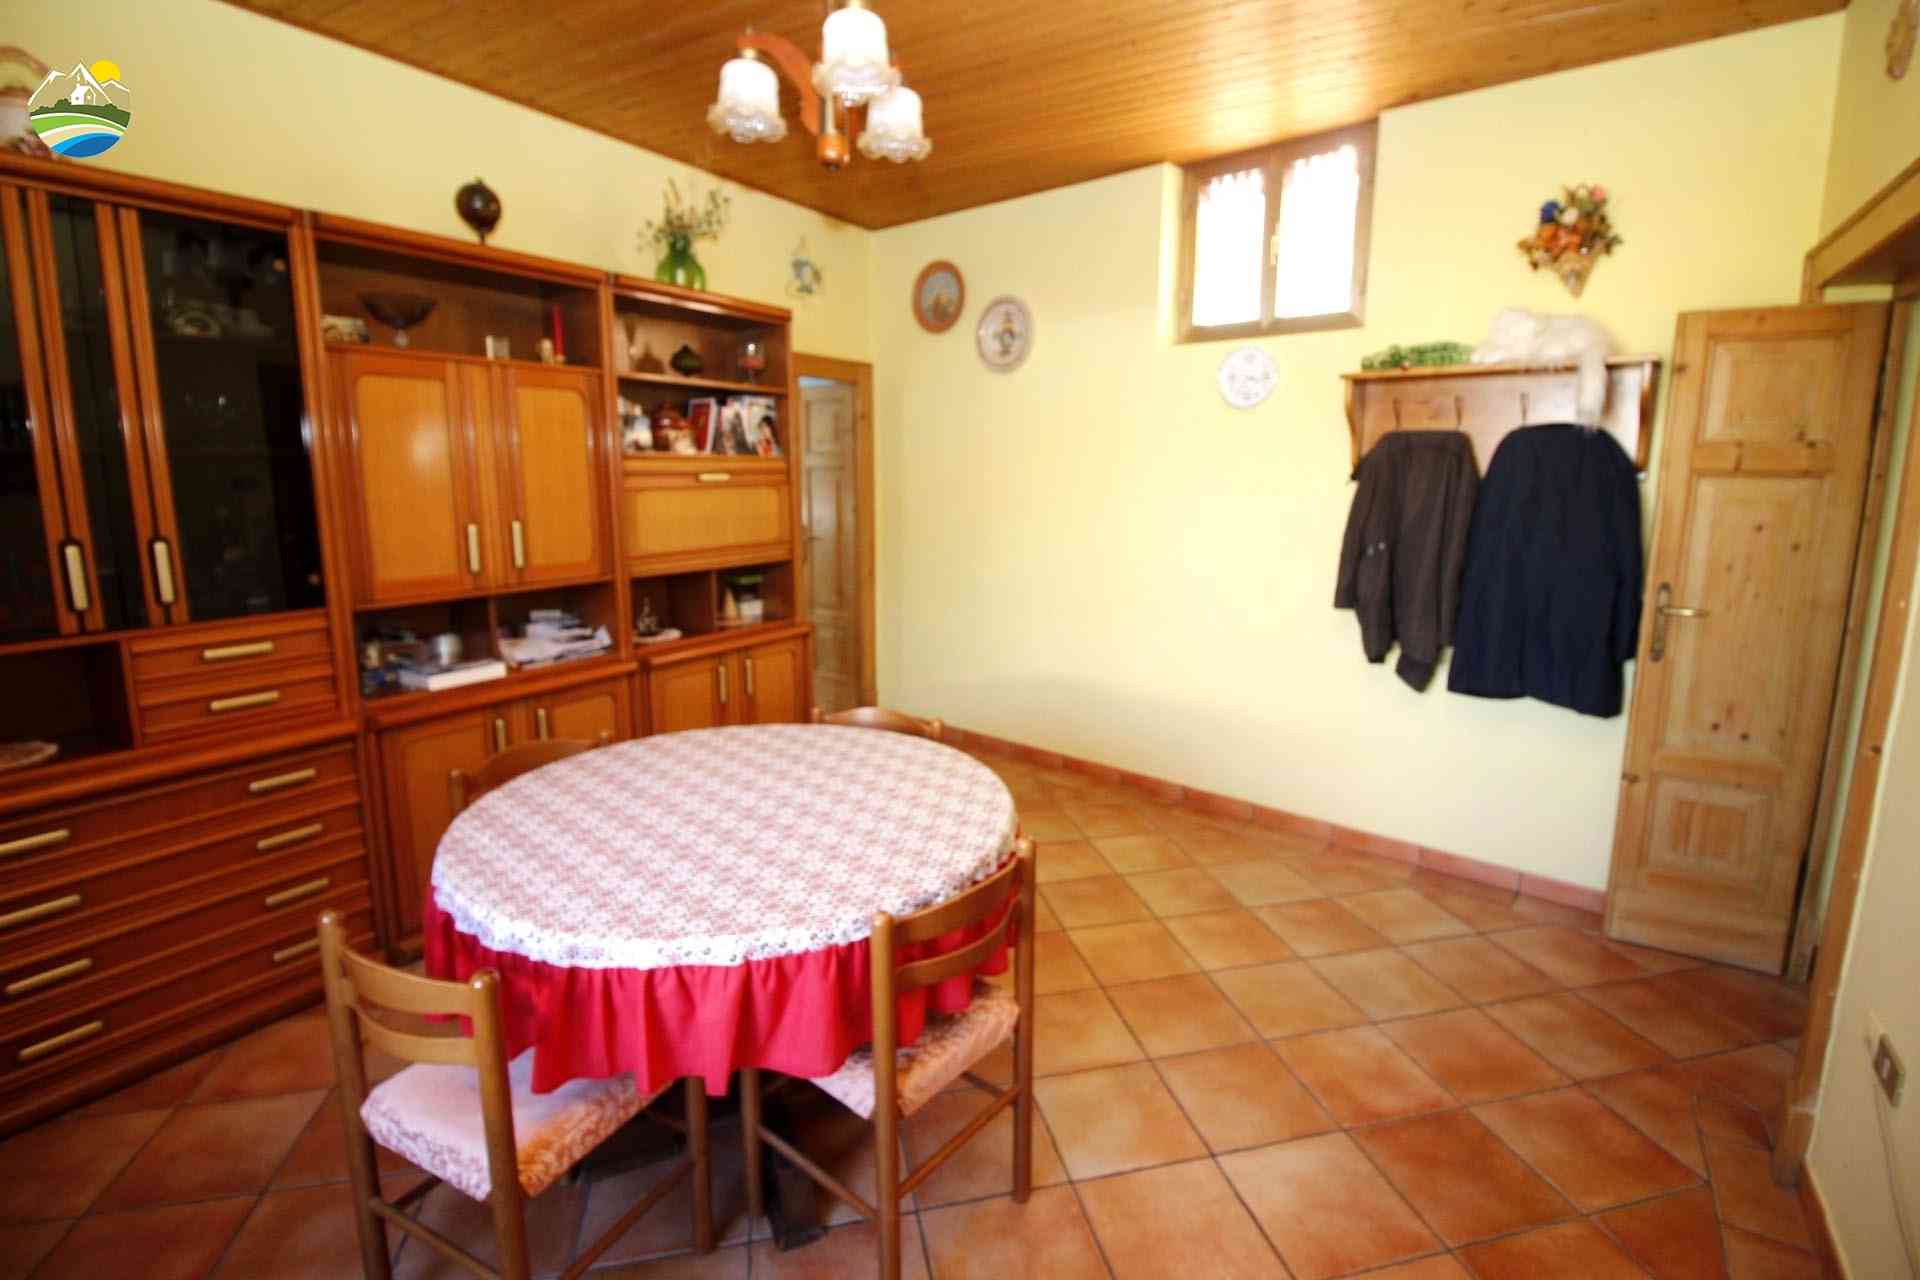 Casa in paese Casa in paese in vendita Elice (PE), Casa Antonella - Elice - EUR 90.531 580